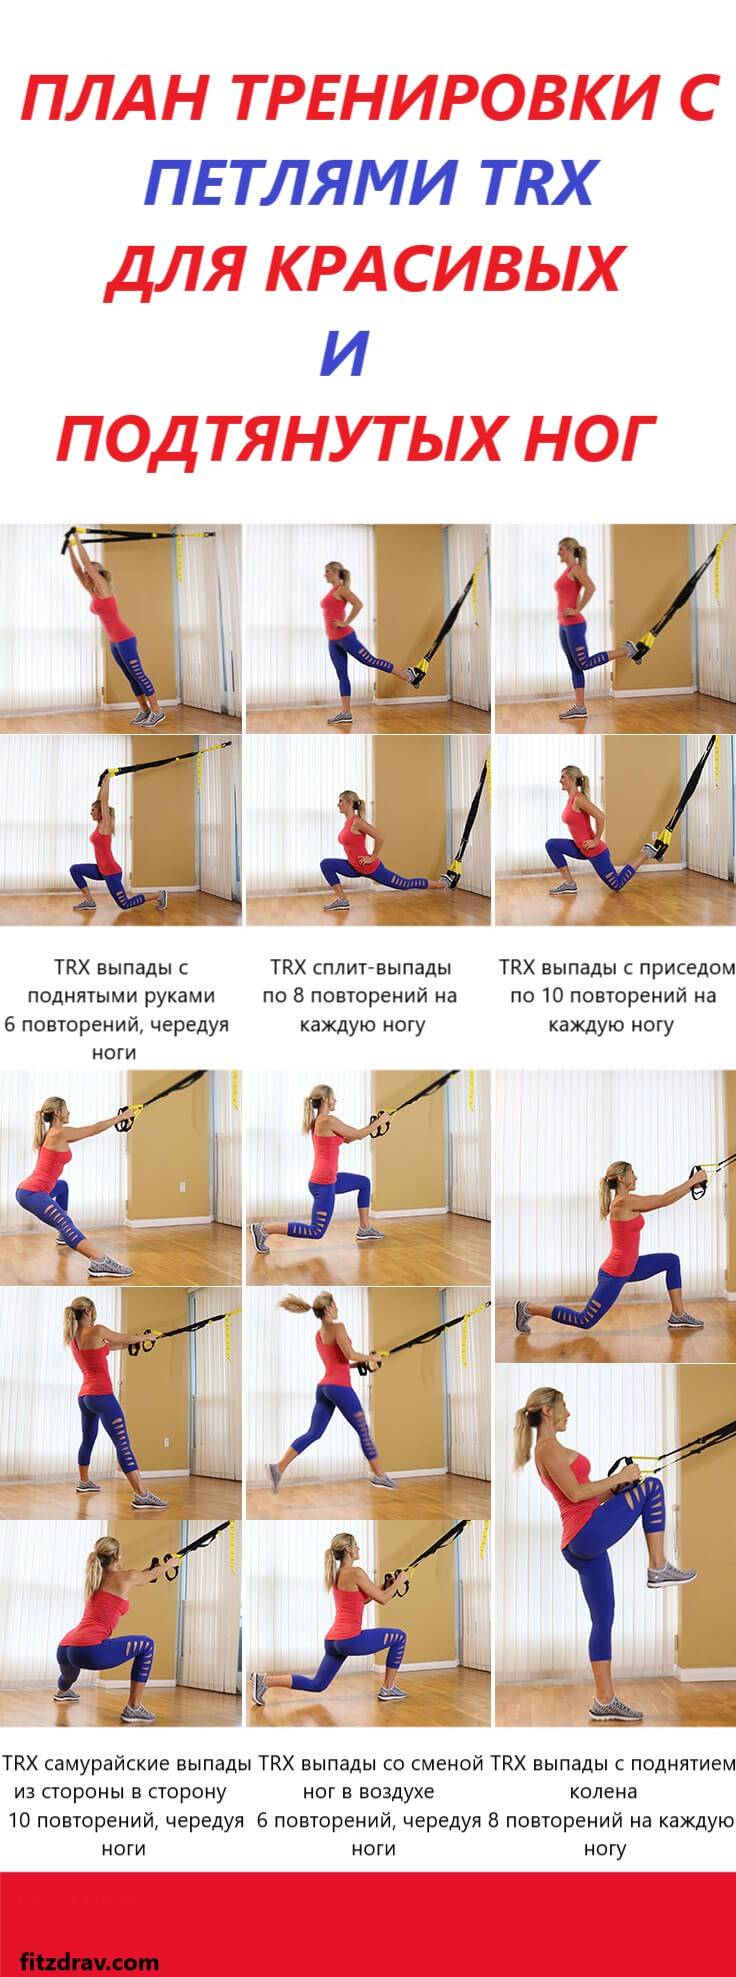 Петли трх (trx): лучшие упражнения и программы тренировок